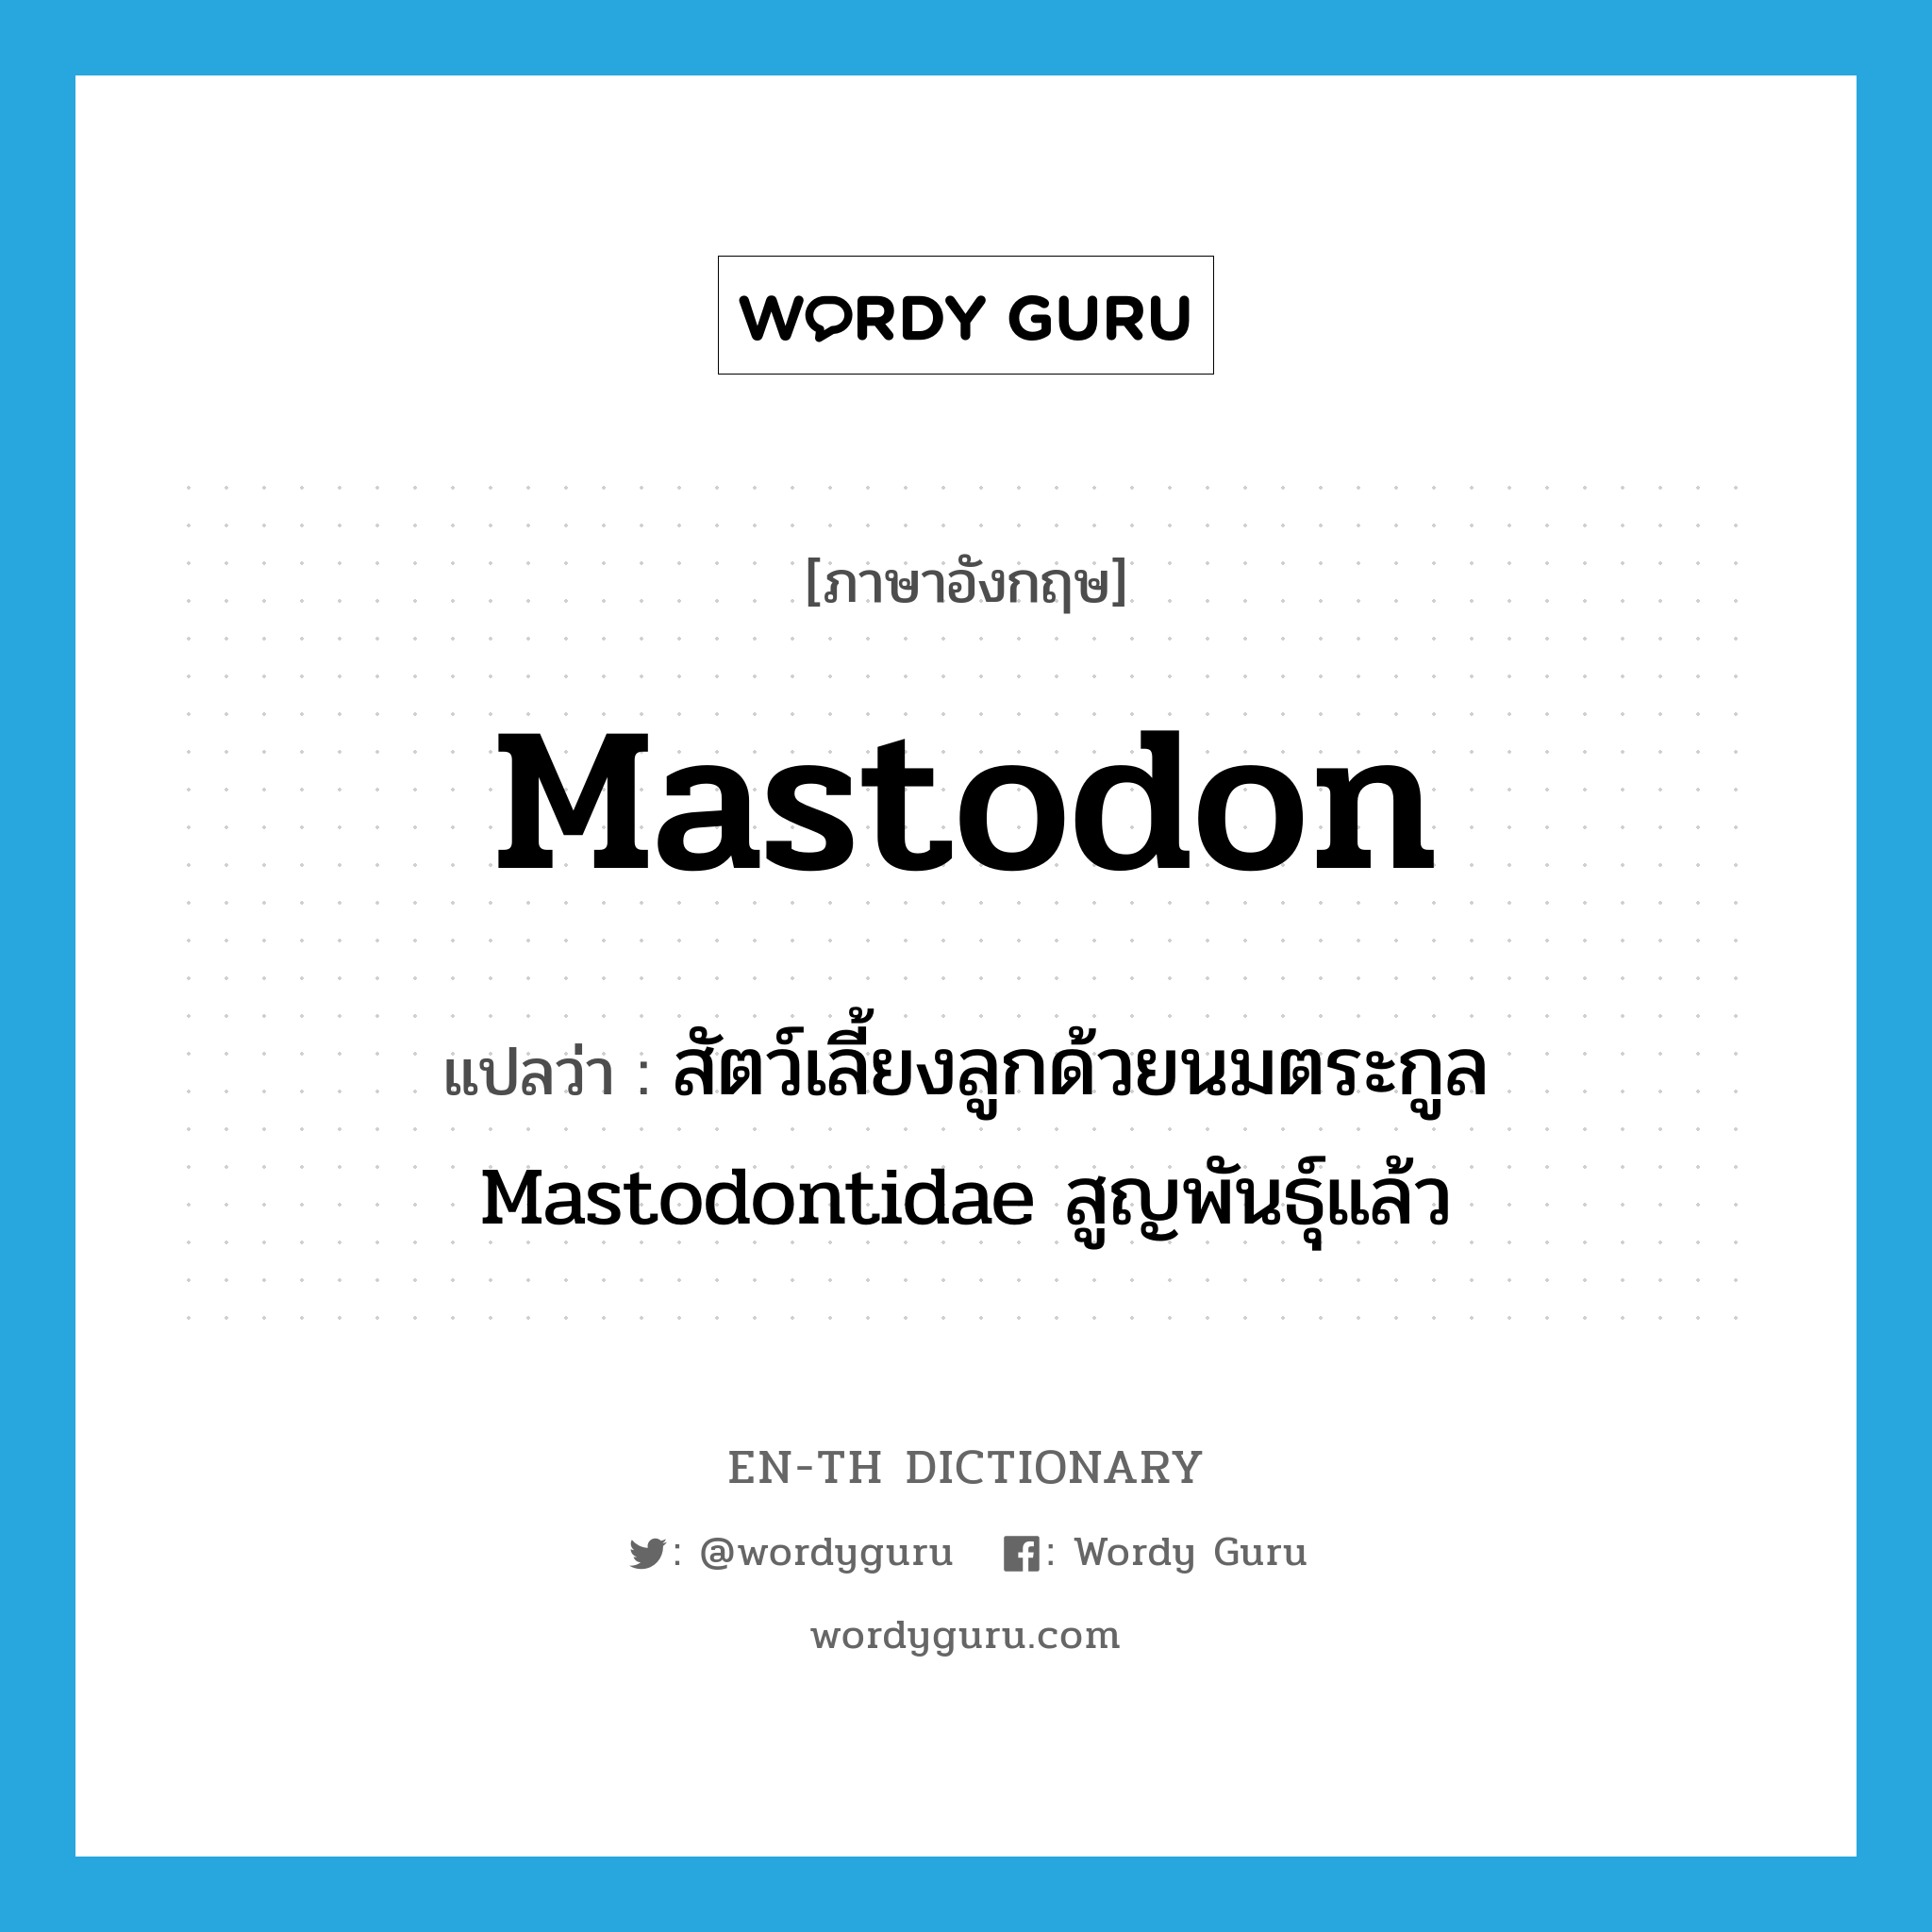 สัตว์เลี้ยงลูกด้วยนมตระกูล Mastodontidae สูญพันธุ์แล้ว ภาษาอังกฤษ?, คำศัพท์ภาษาอังกฤษ สัตว์เลี้ยงลูกด้วยนมตระกูล Mastodontidae สูญพันธุ์แล้ว แปลว่า mastodon ประเภท N หมวด N